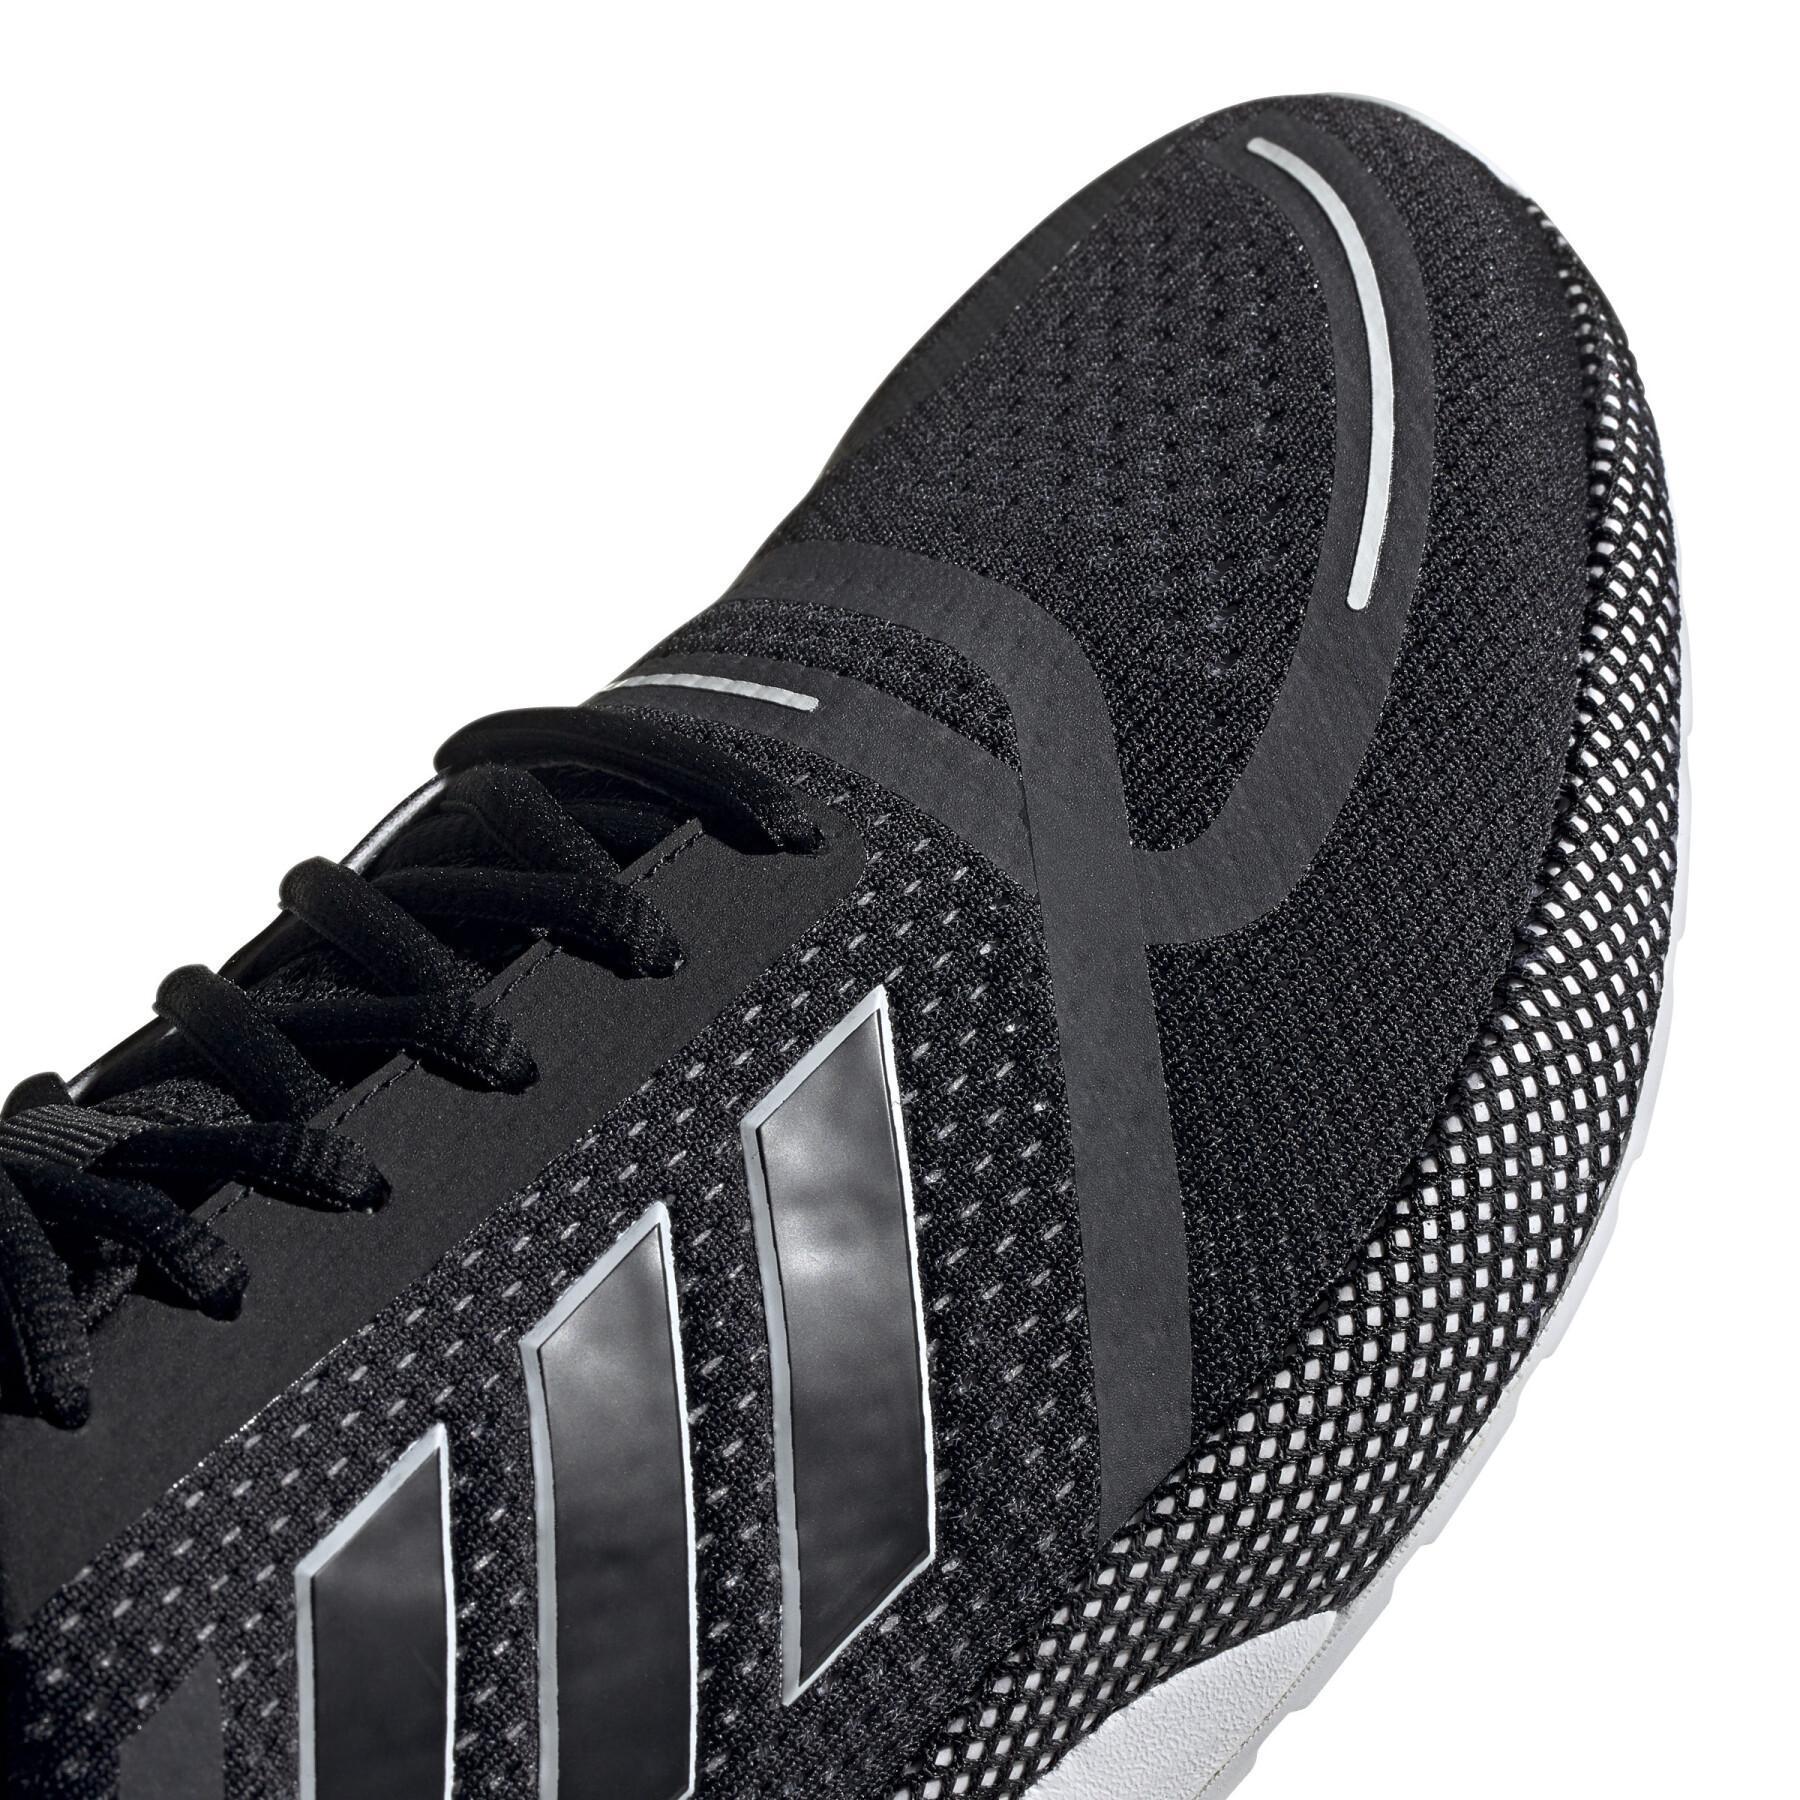 Chaussures de running adidas Nova Run